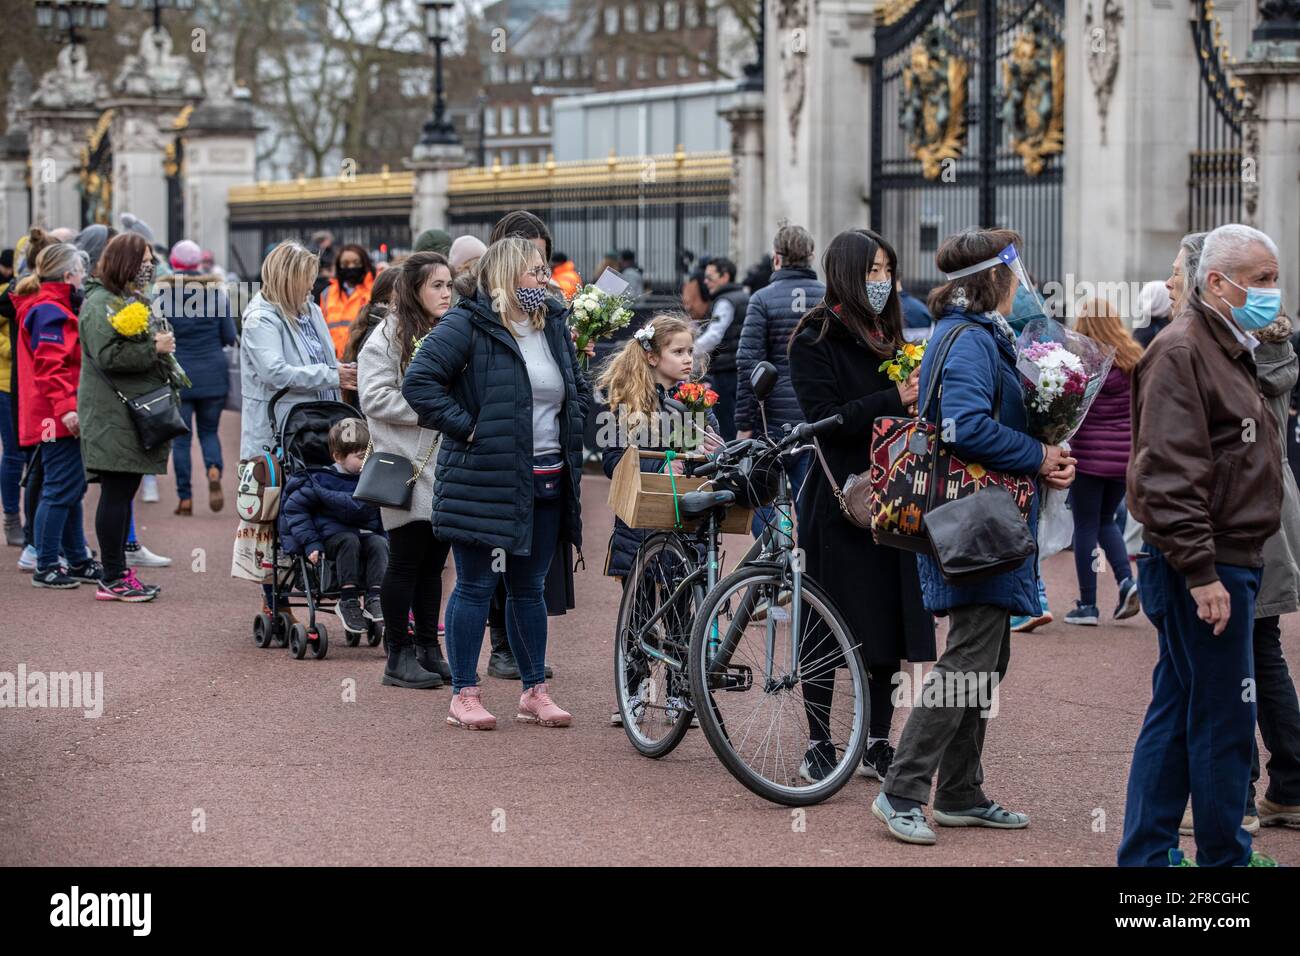 Les wishers font la queue pour déposer des fleurs pour montrer leur respect pour le duc d'Édimbourg devant le palais de Buckingham après que le palais a annoncé sa mort. Banque D'Images